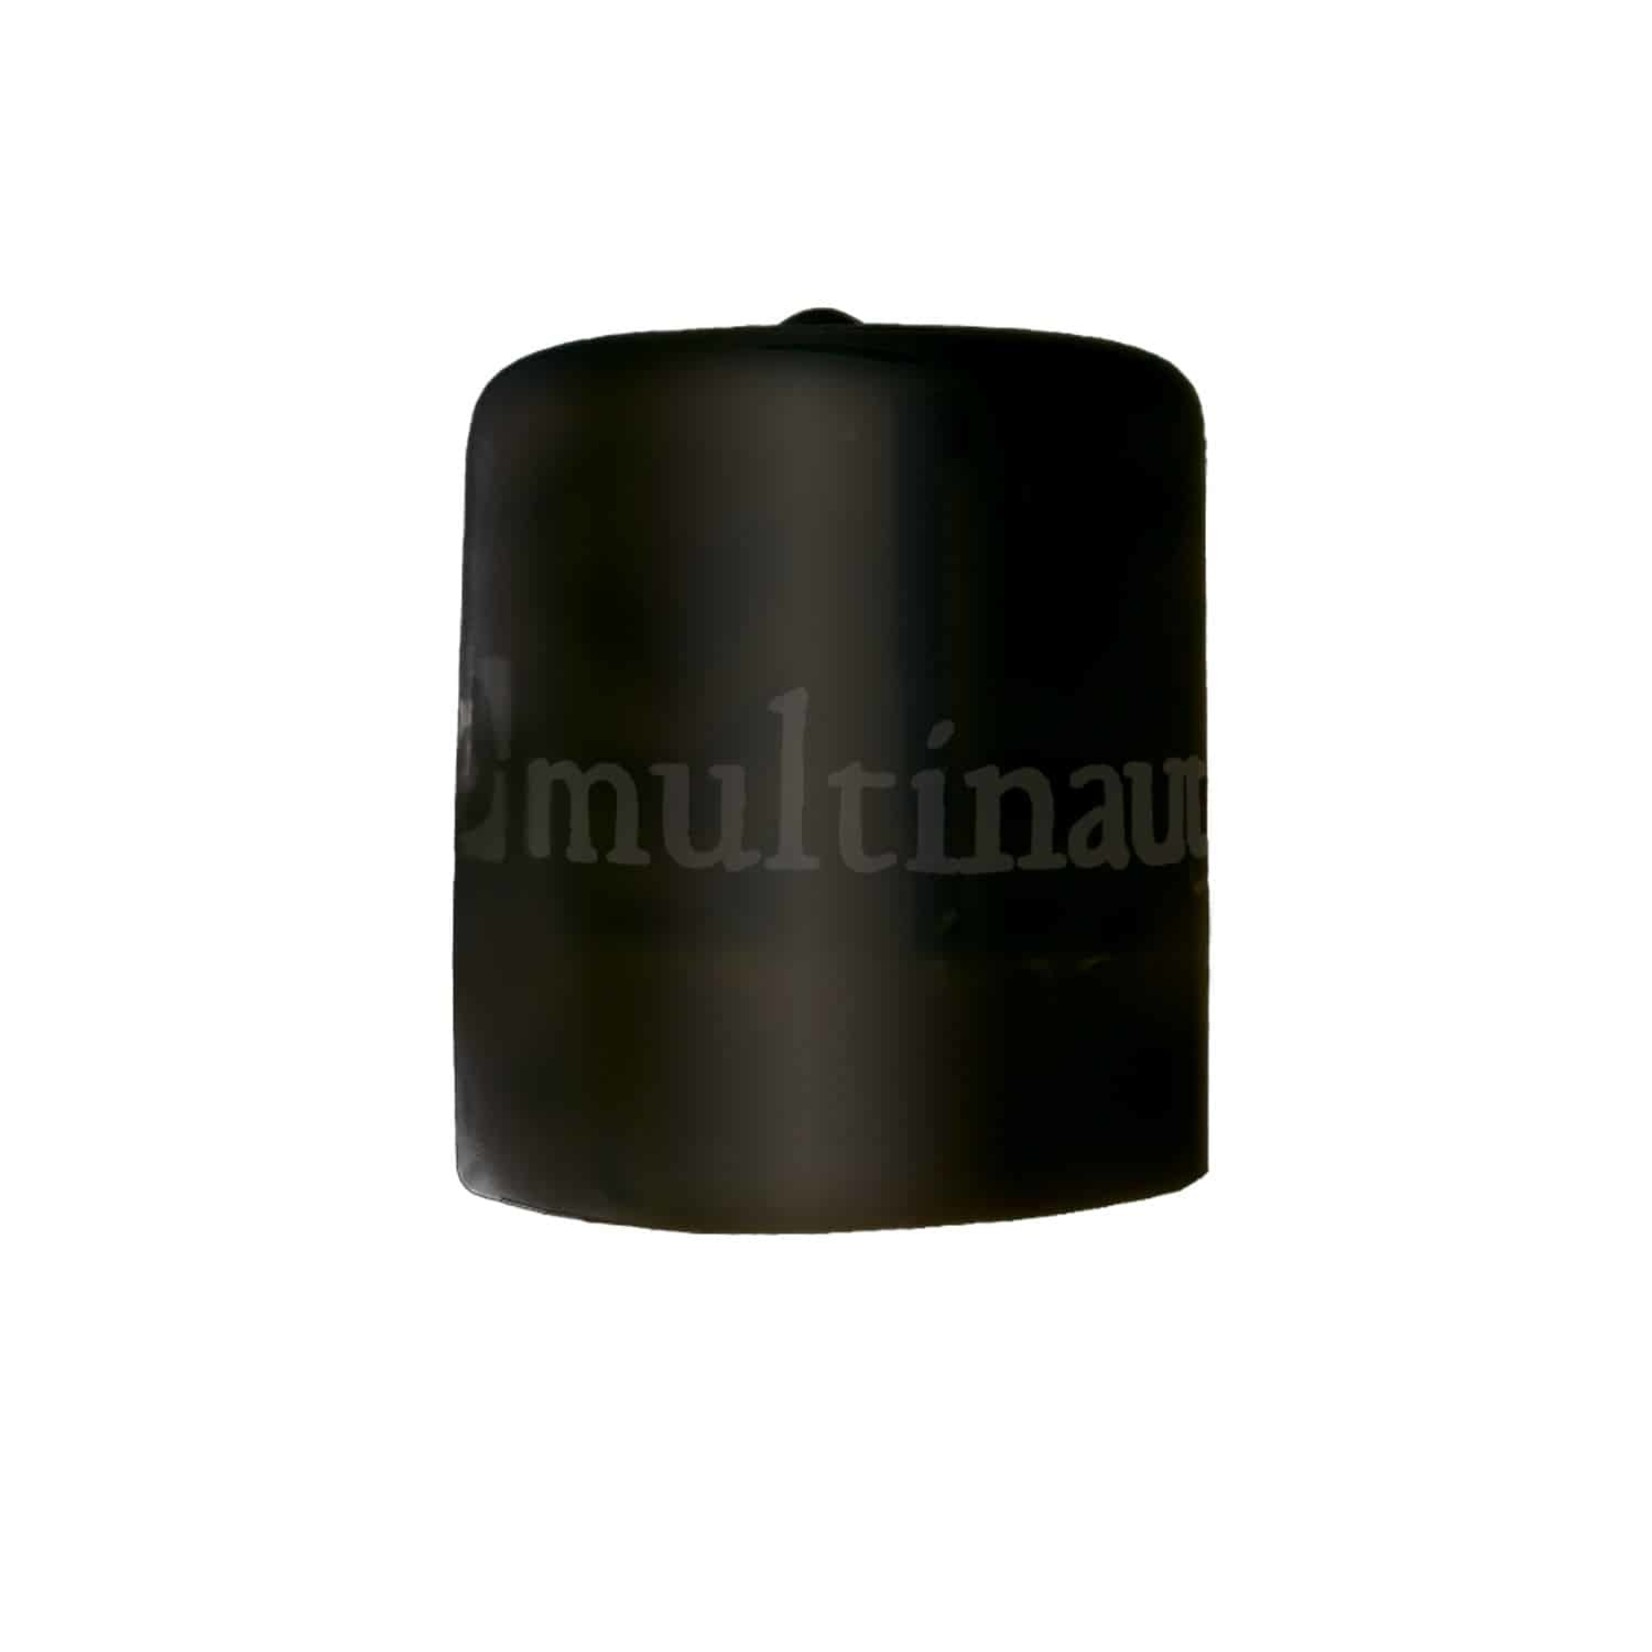 Multinautic Multinautic Safety pile cap 2x Pk